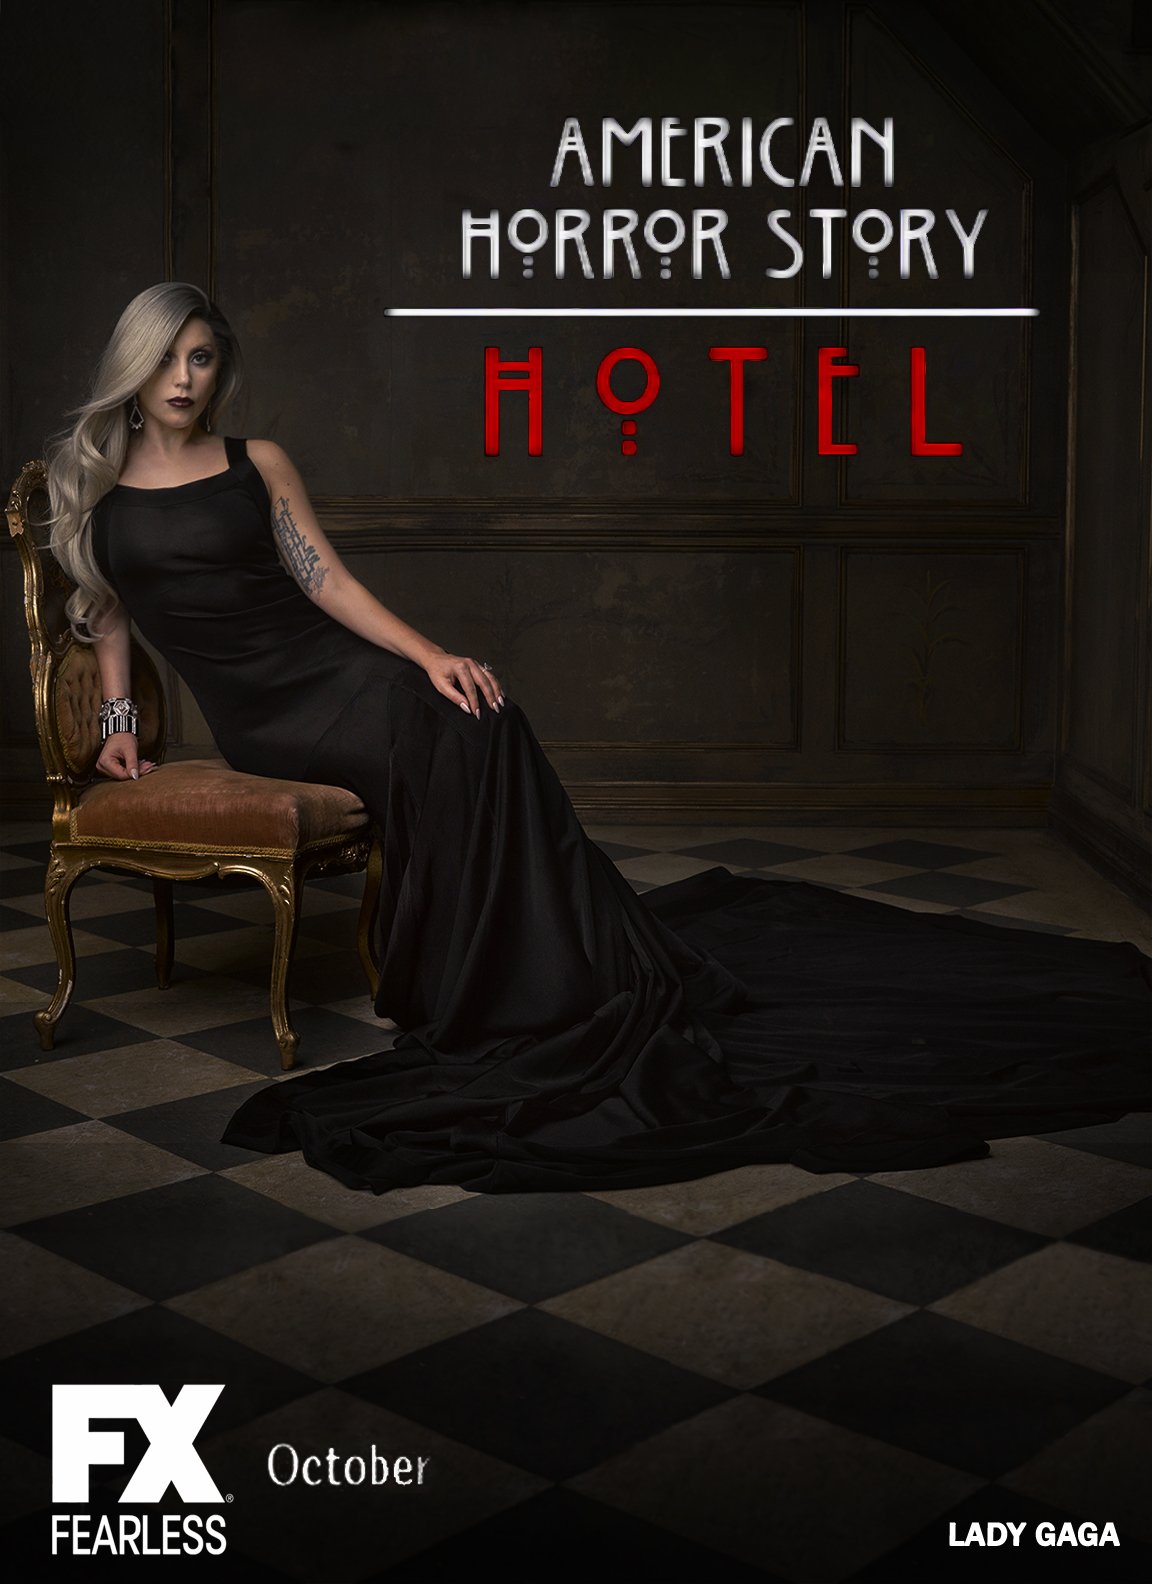 ამერიკული საშინელებათა ისტორია სეზონი 5 / American Horror Story Season 5 ქართულად